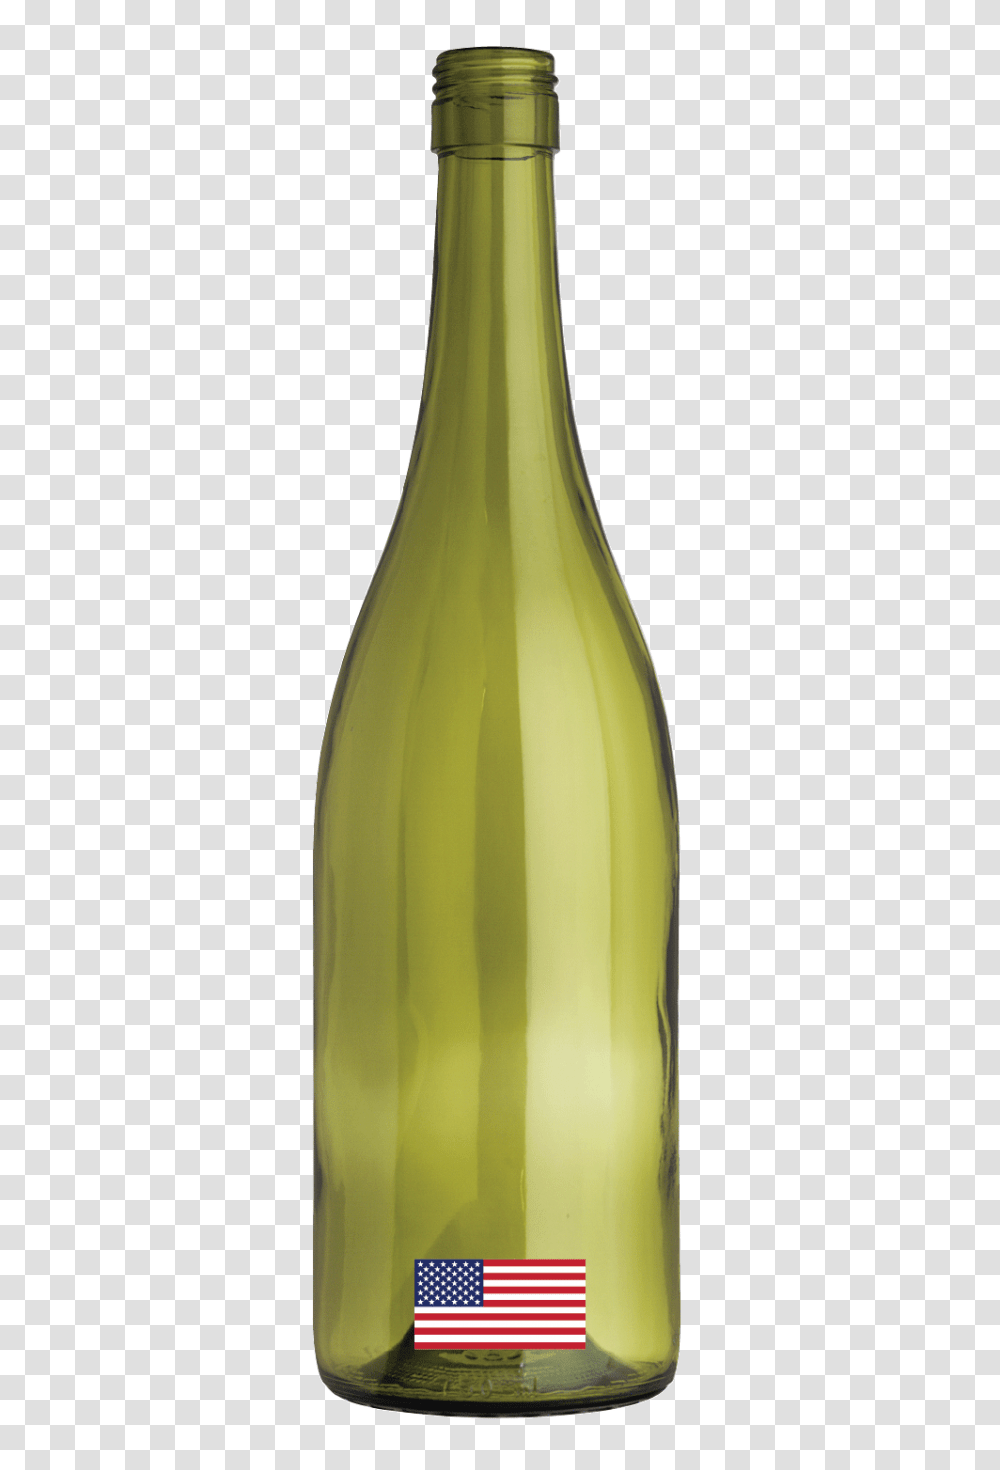 Bottles Aac Wine, Alcohol, Beverage, Drink, Wine Bottle Transparent Png